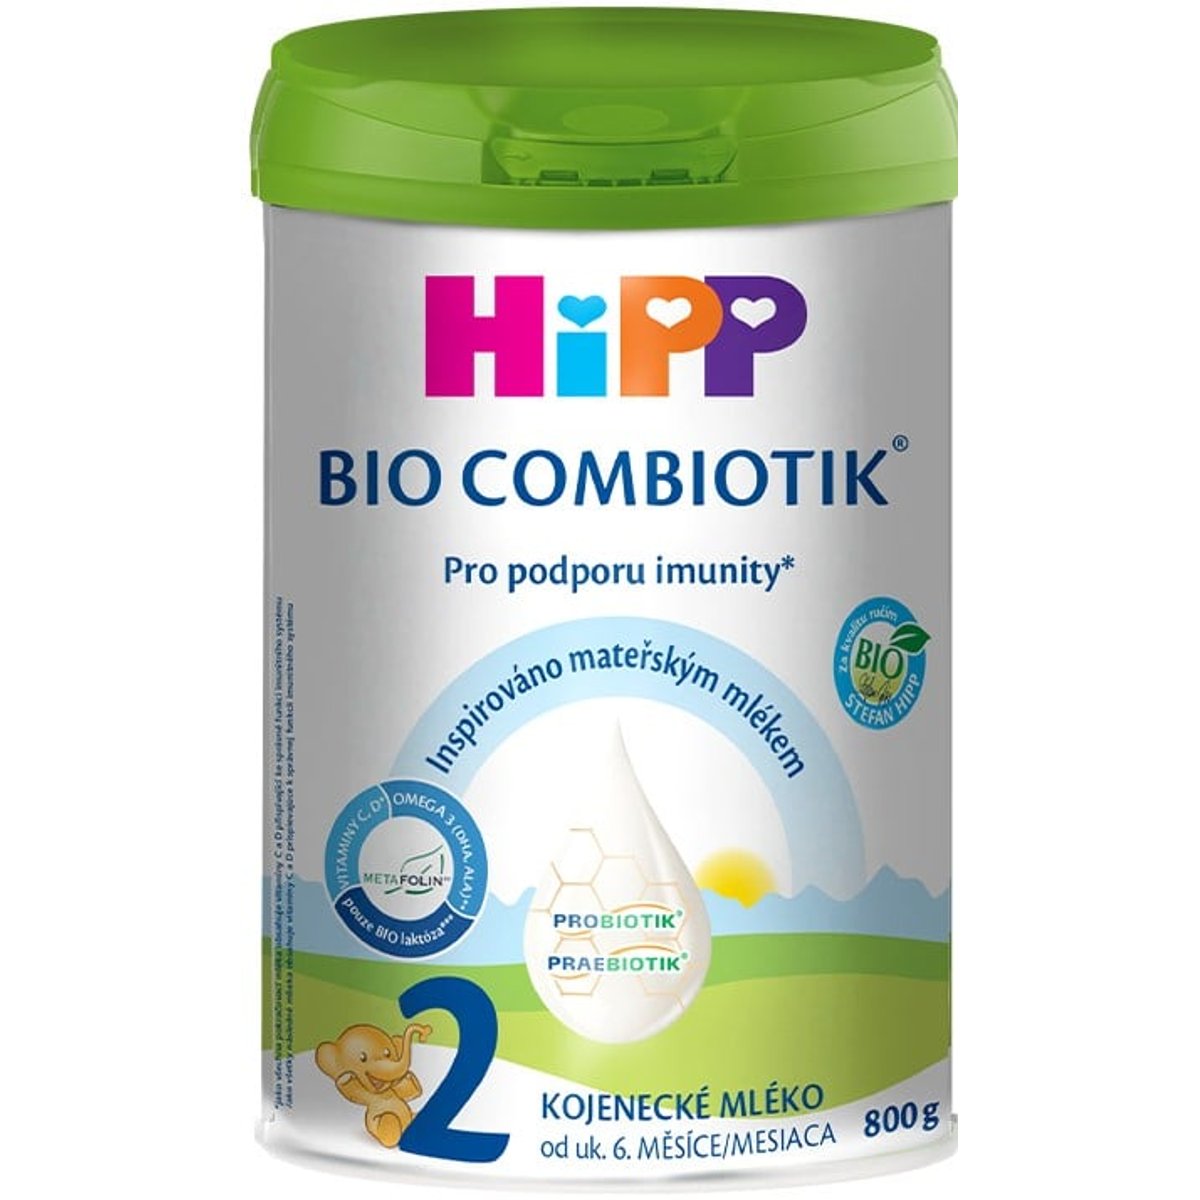 HiPP BIO Combiotik 2 pokračovací mléčná kojenecká výživa